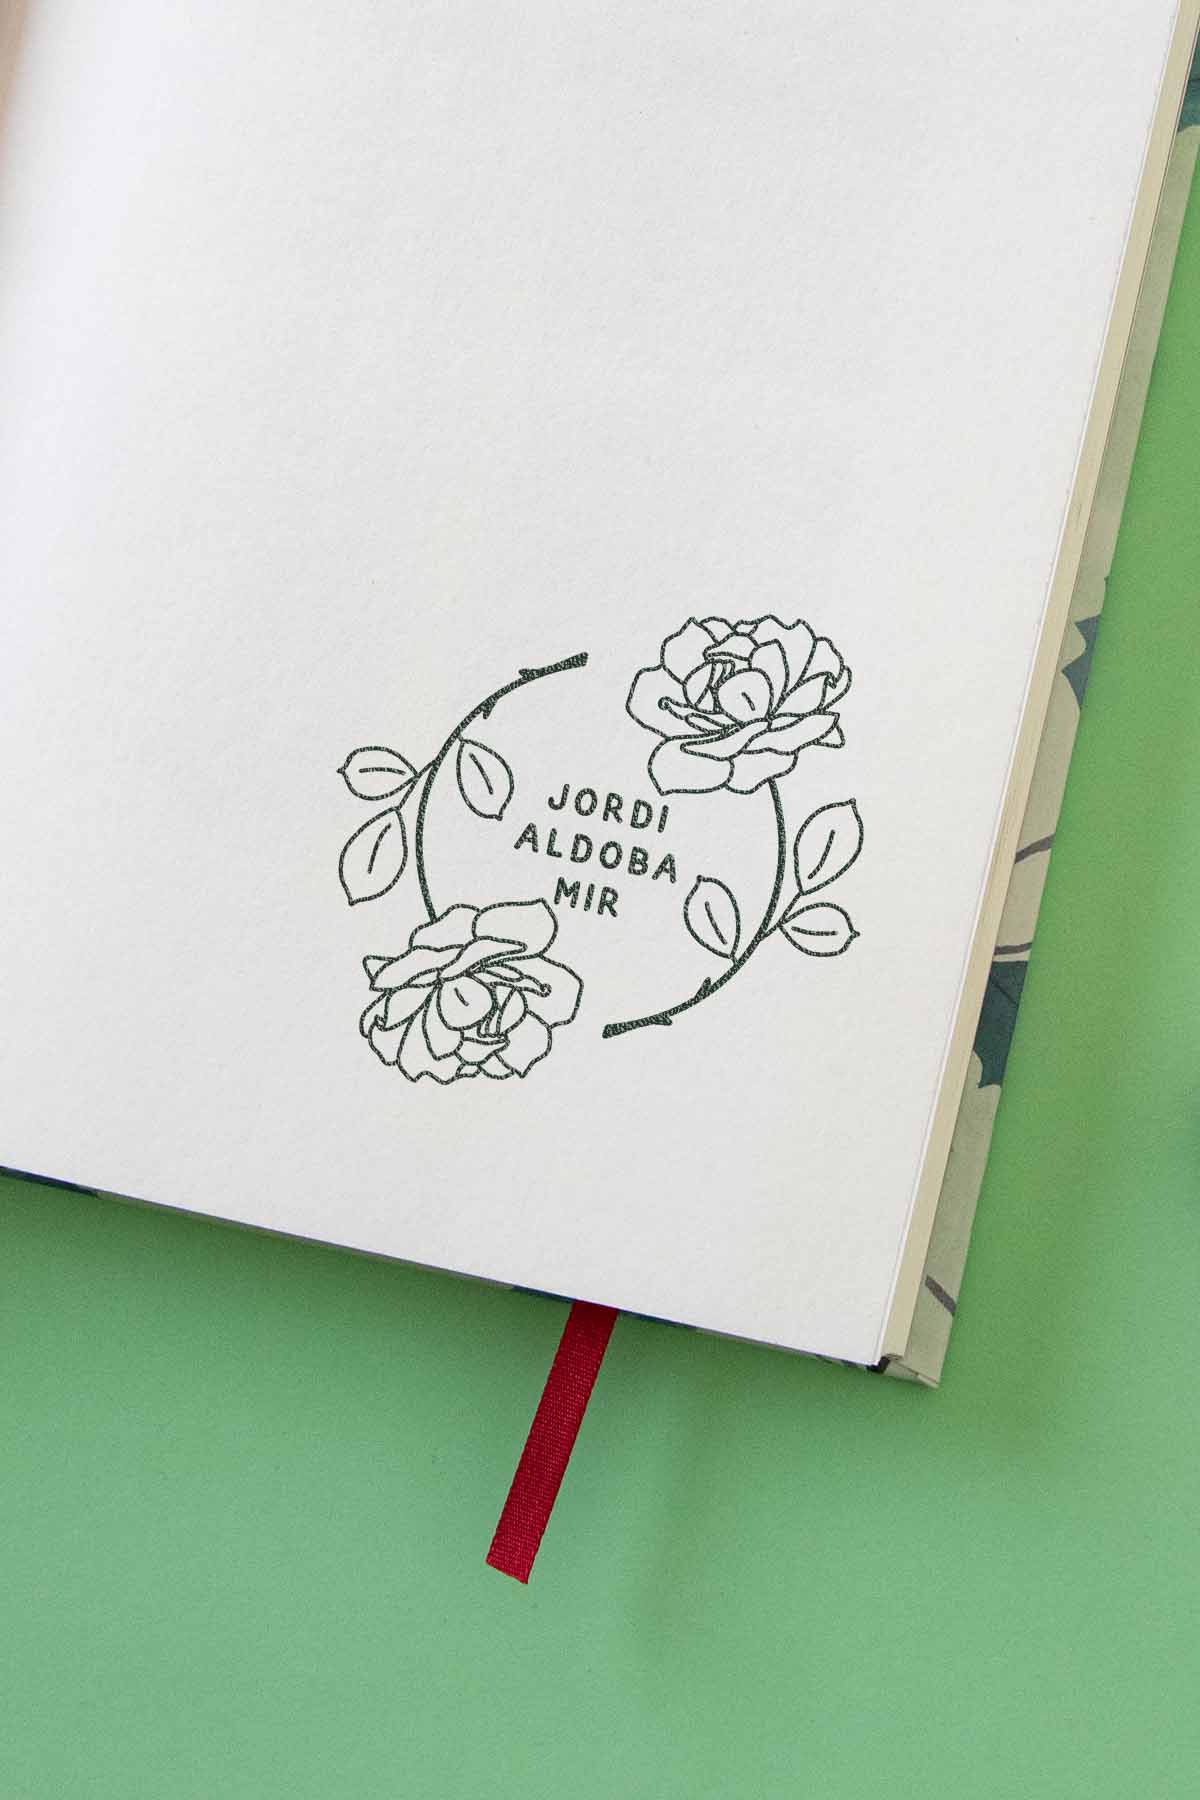 Portadilla de libro estampada con sello exlibris de dos rosas que crean un círculo